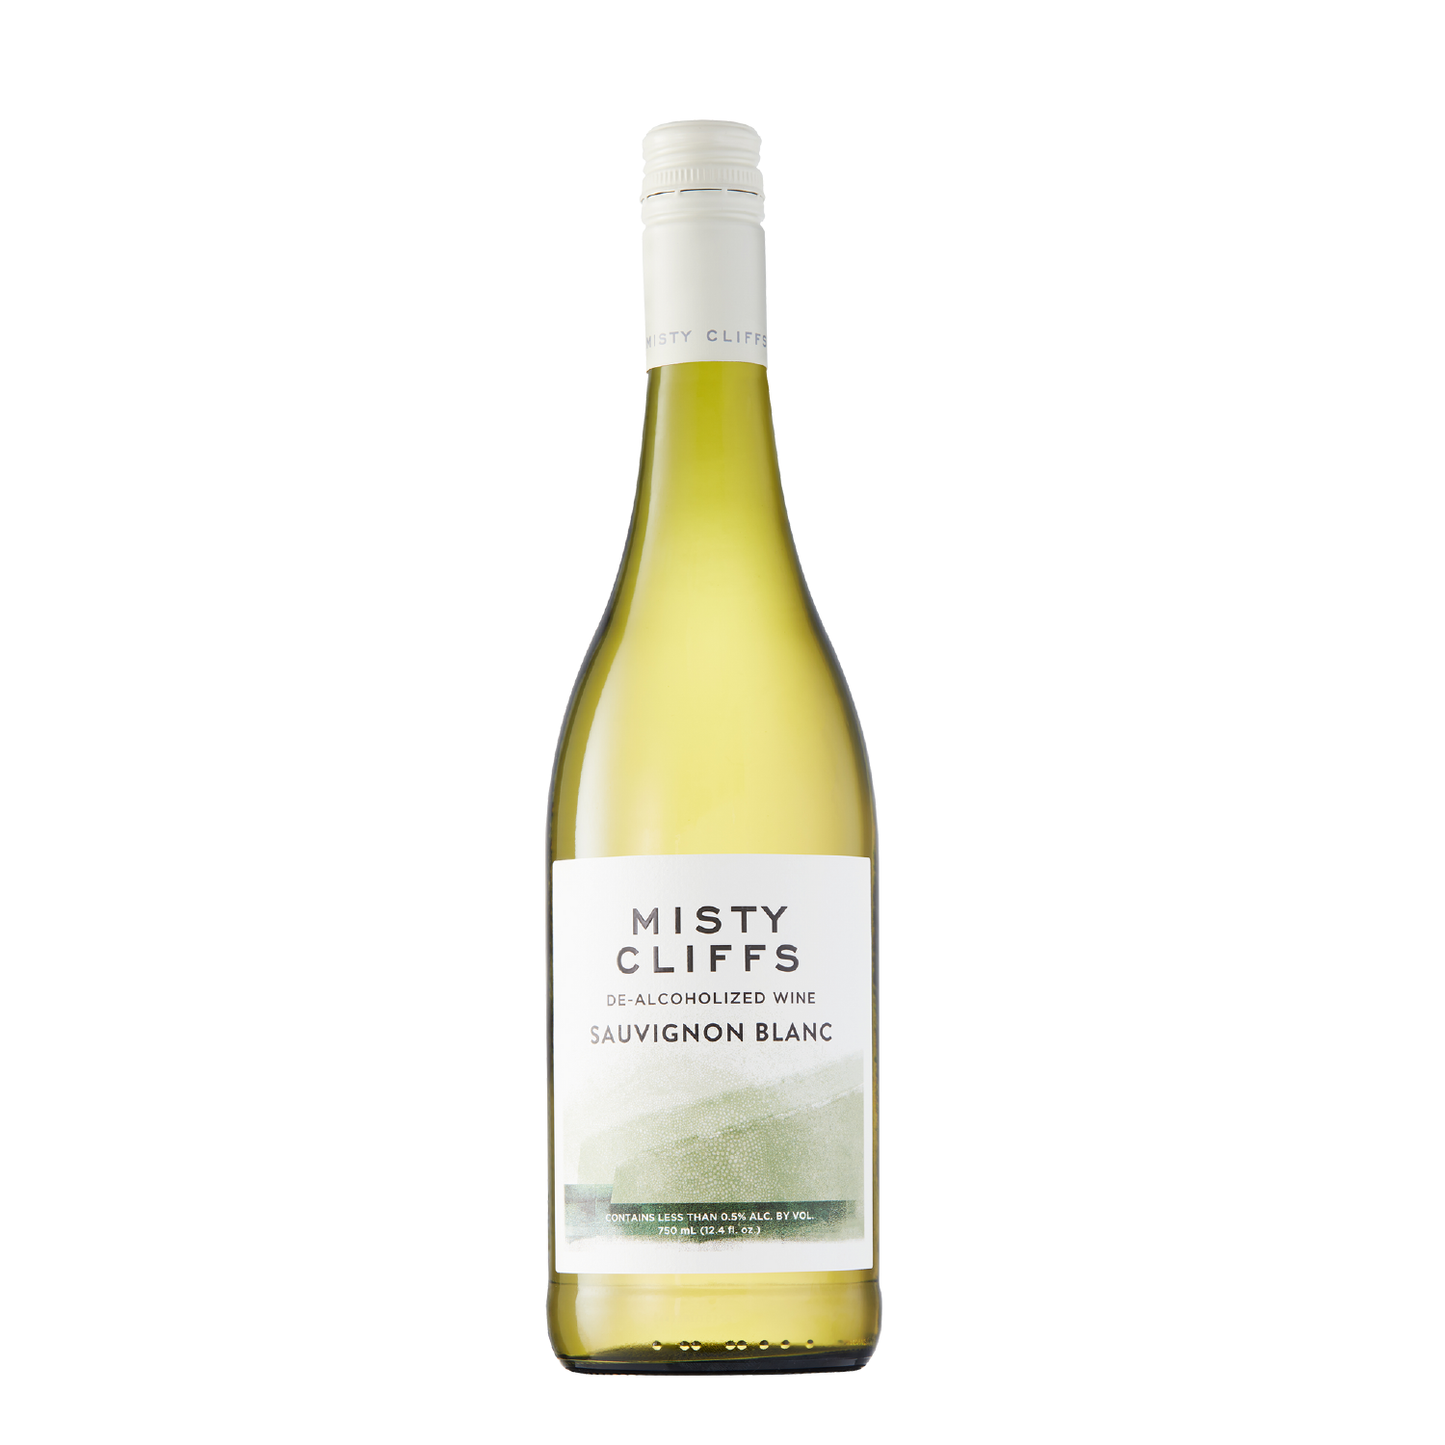 Misty Cliffs Sauvignon Blanc Dealcoholized Wine